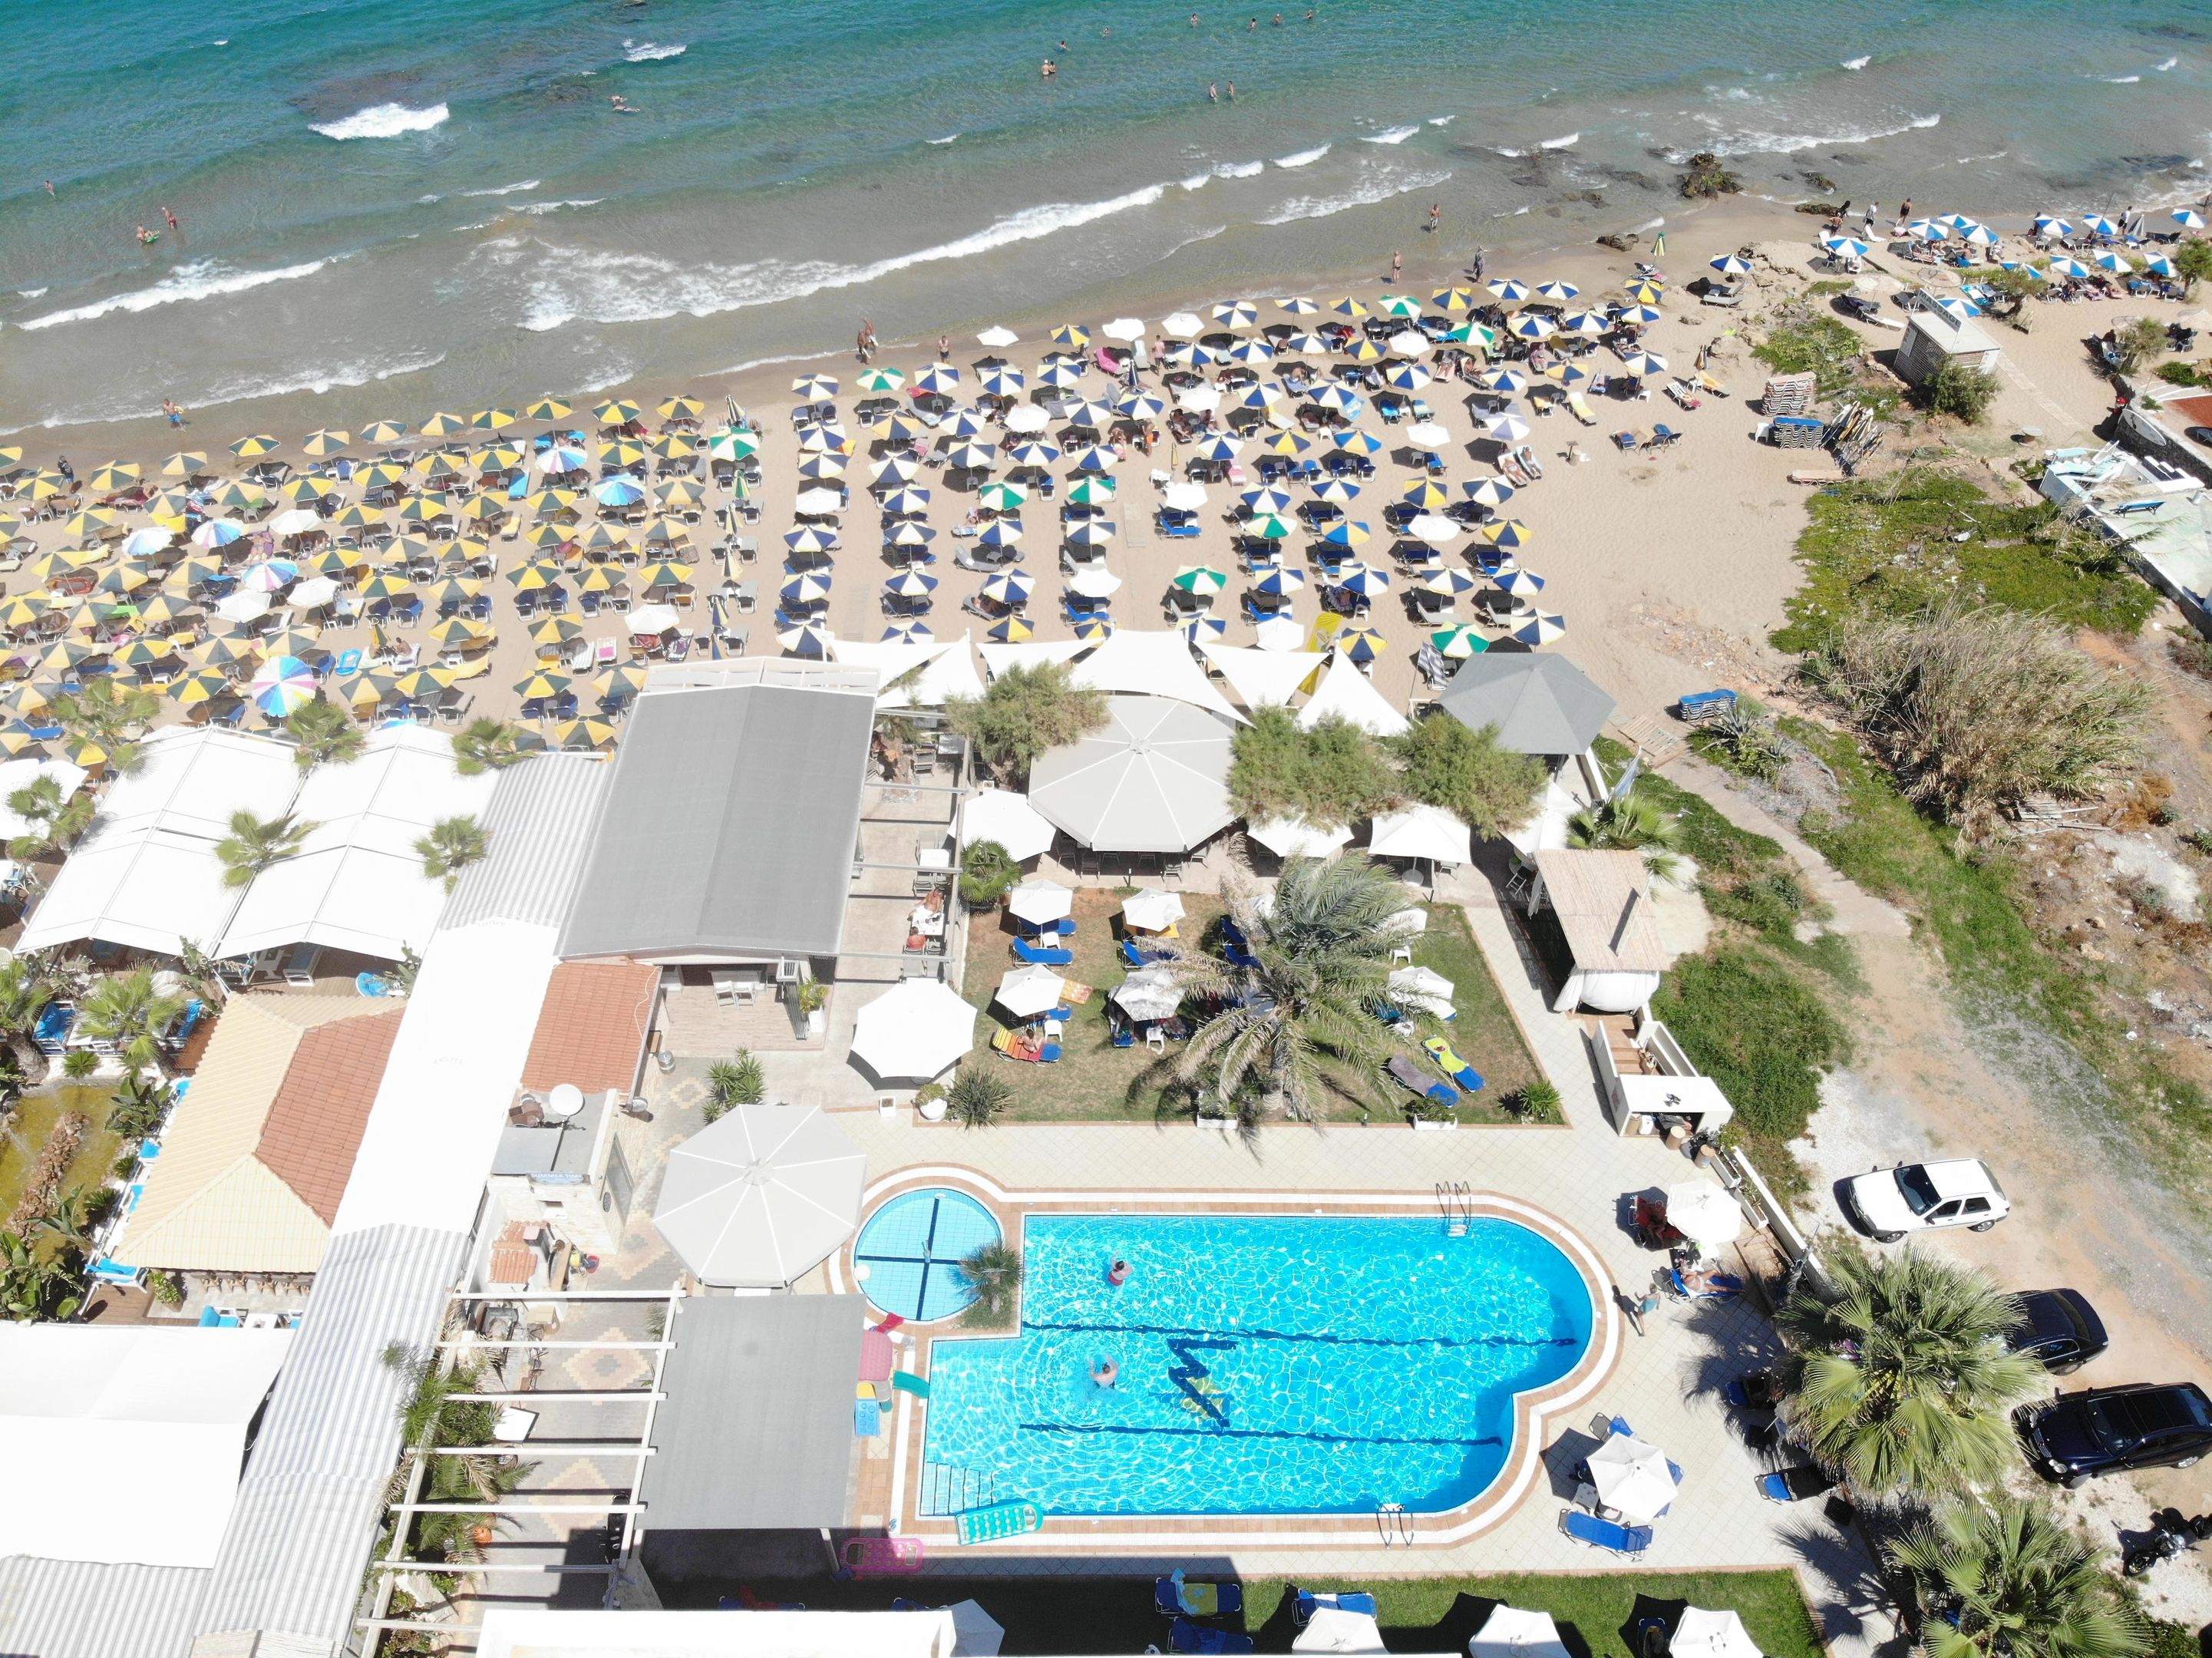 Malliotakis Beach Hotel